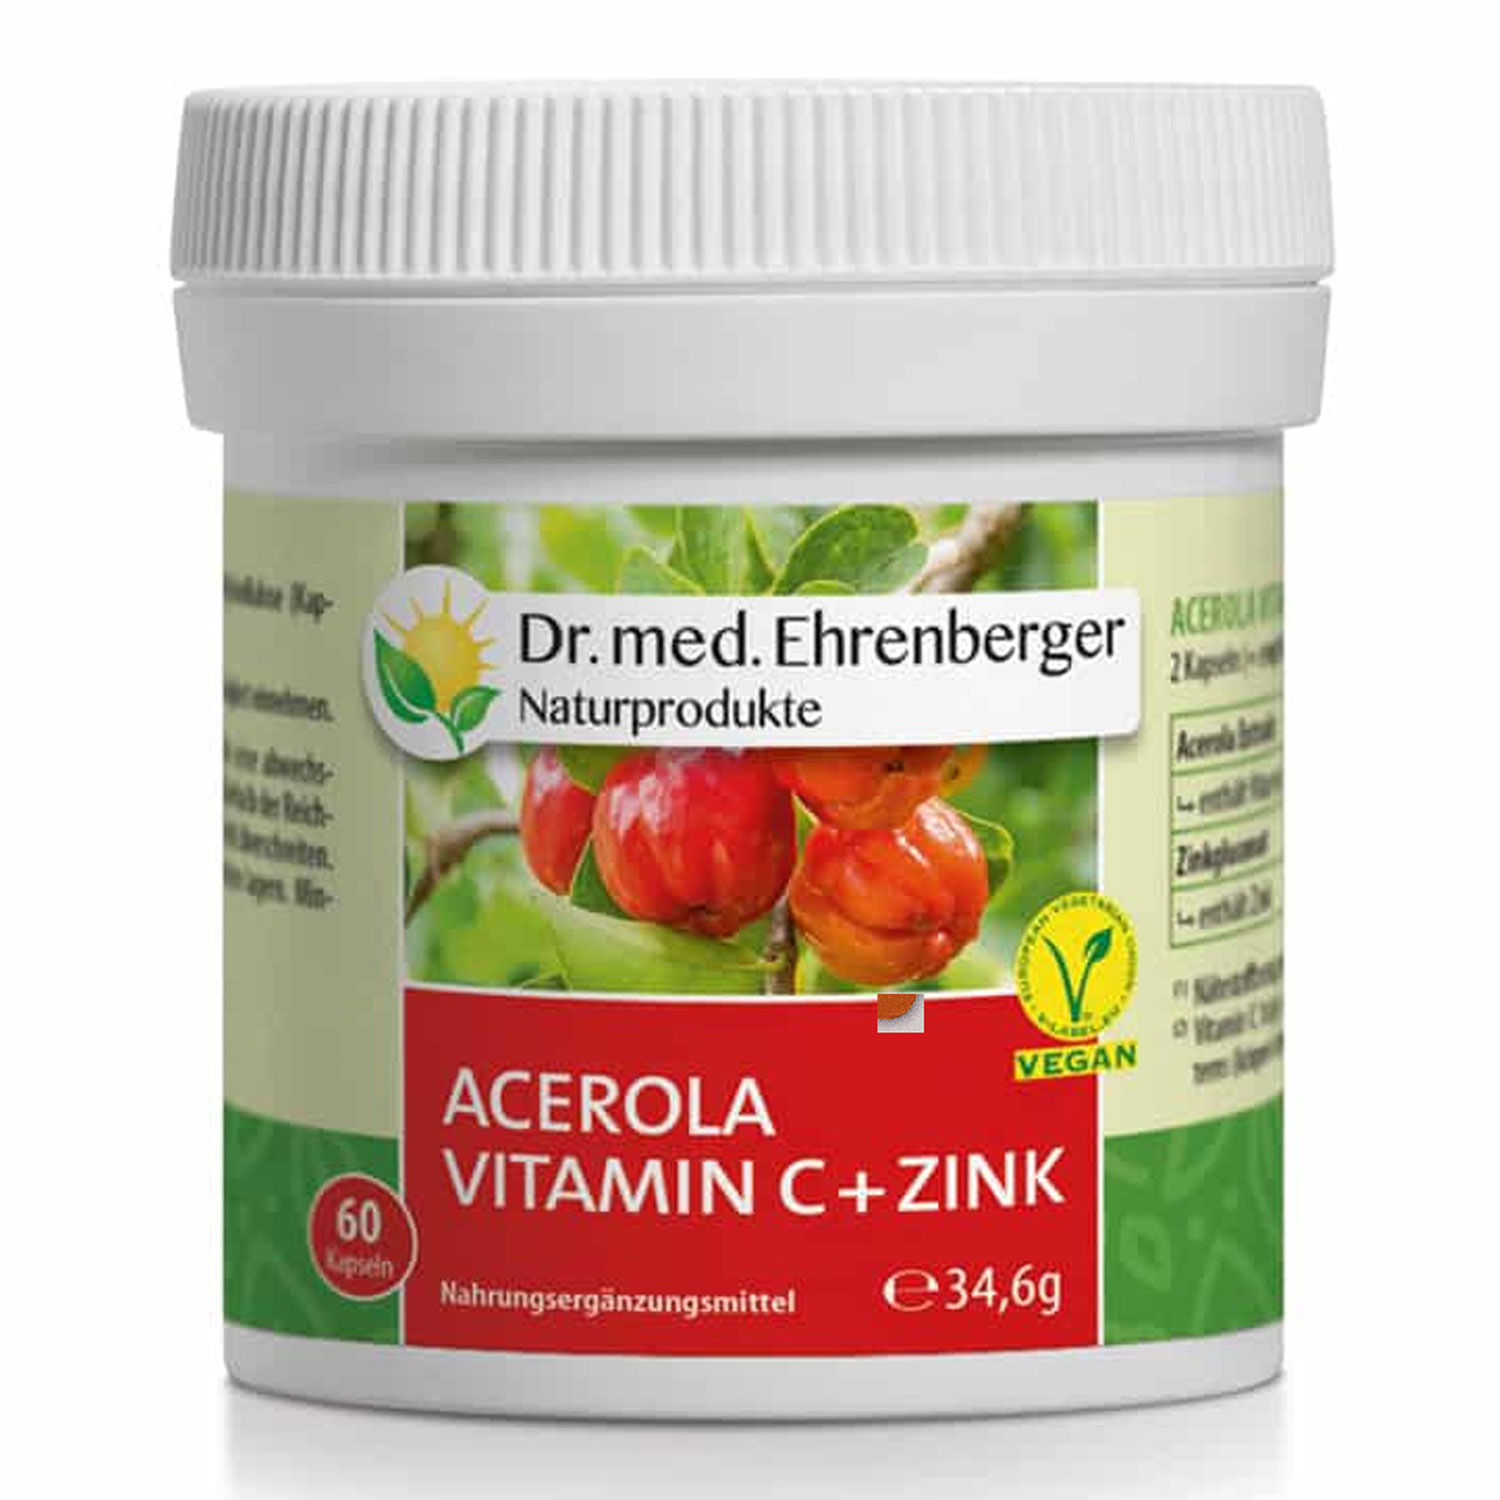 Acerola Vitamin C + Zink Kapseln von Dr. Ehrenberger - 60 Kapseln